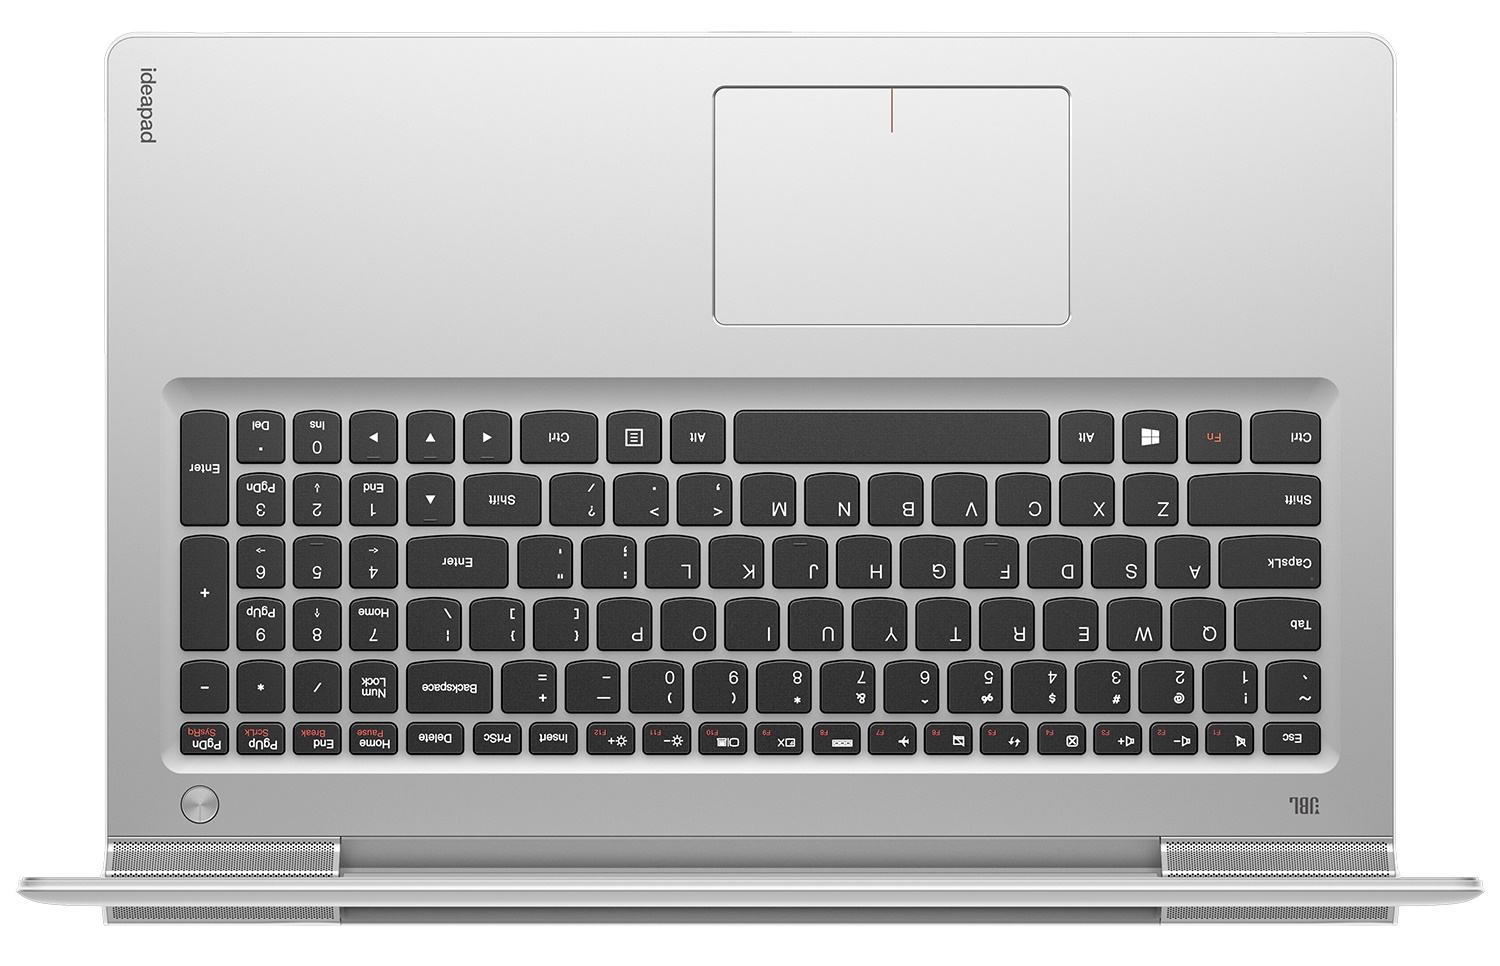 Купить Ноутбук Lenovo Ideapad 700-15isk